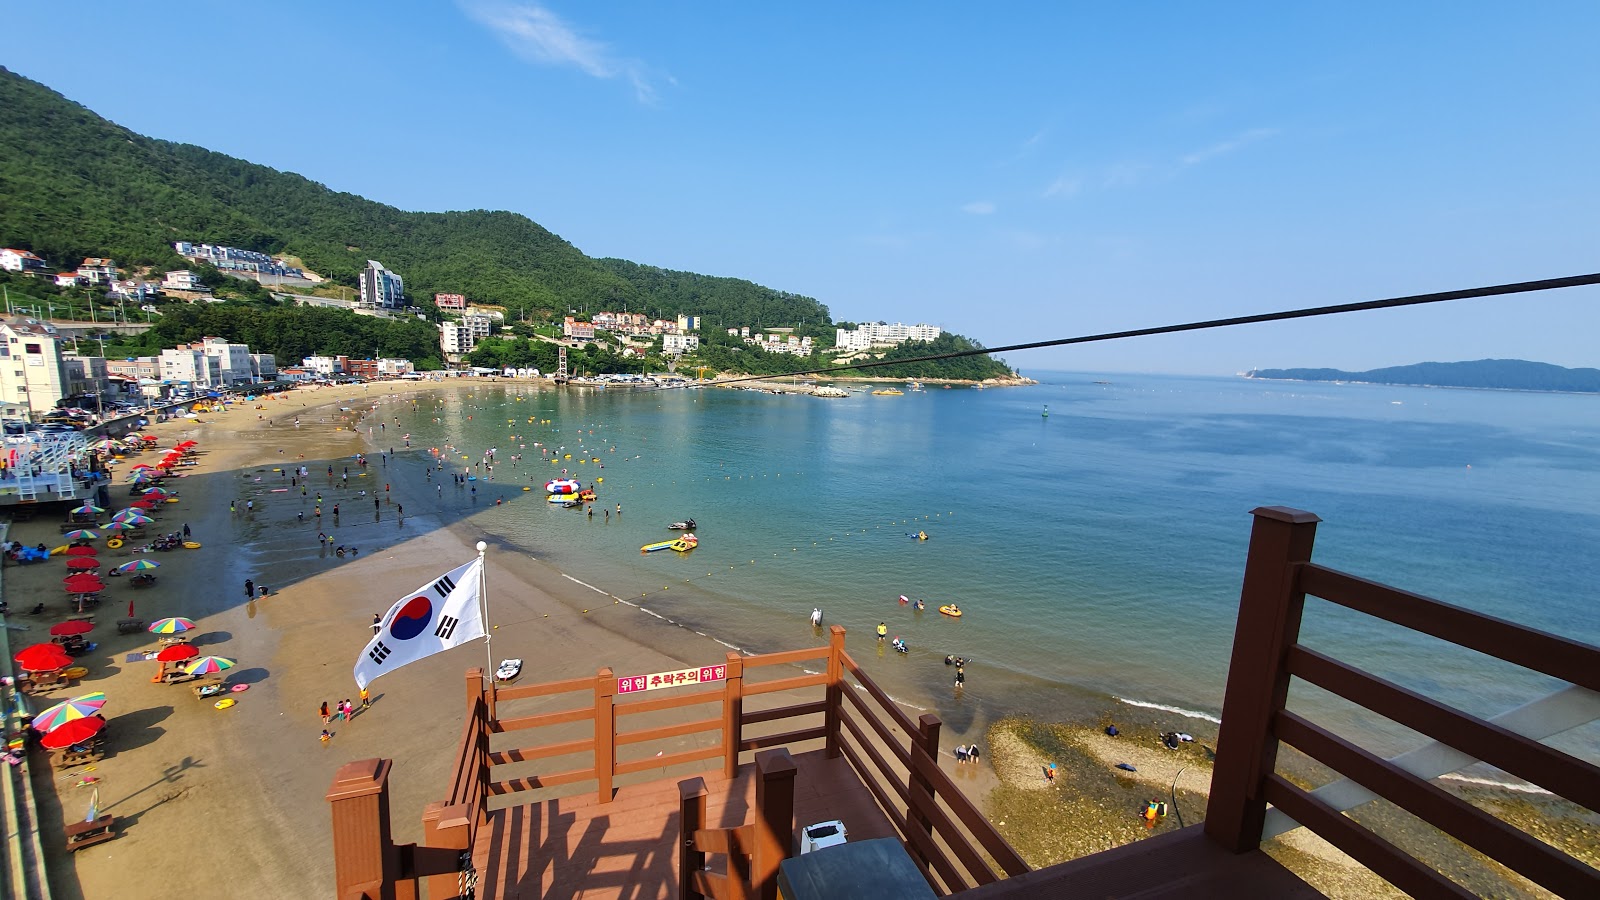 Zdjęcie Deokpo Beach - popularne miejsce wśród znawców relaksu